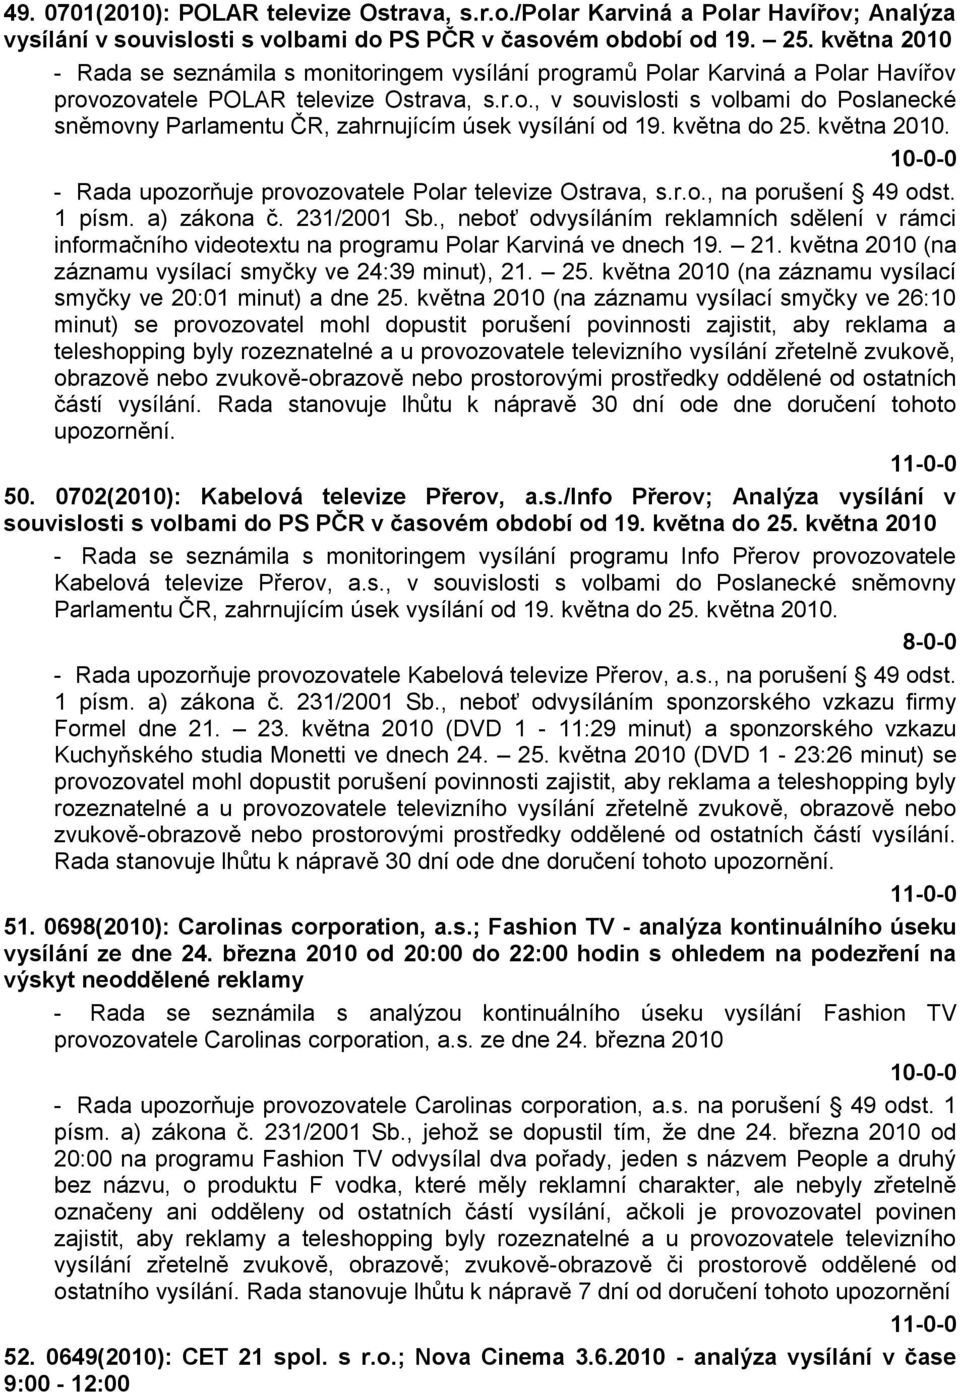 května do 25. května 2010. - Rada upozorňuje provozovatele Polar televize Ostrava, s.r.o., na porušení 49 odst. 1 písm. a) zákona č. 231/2001 Sb.